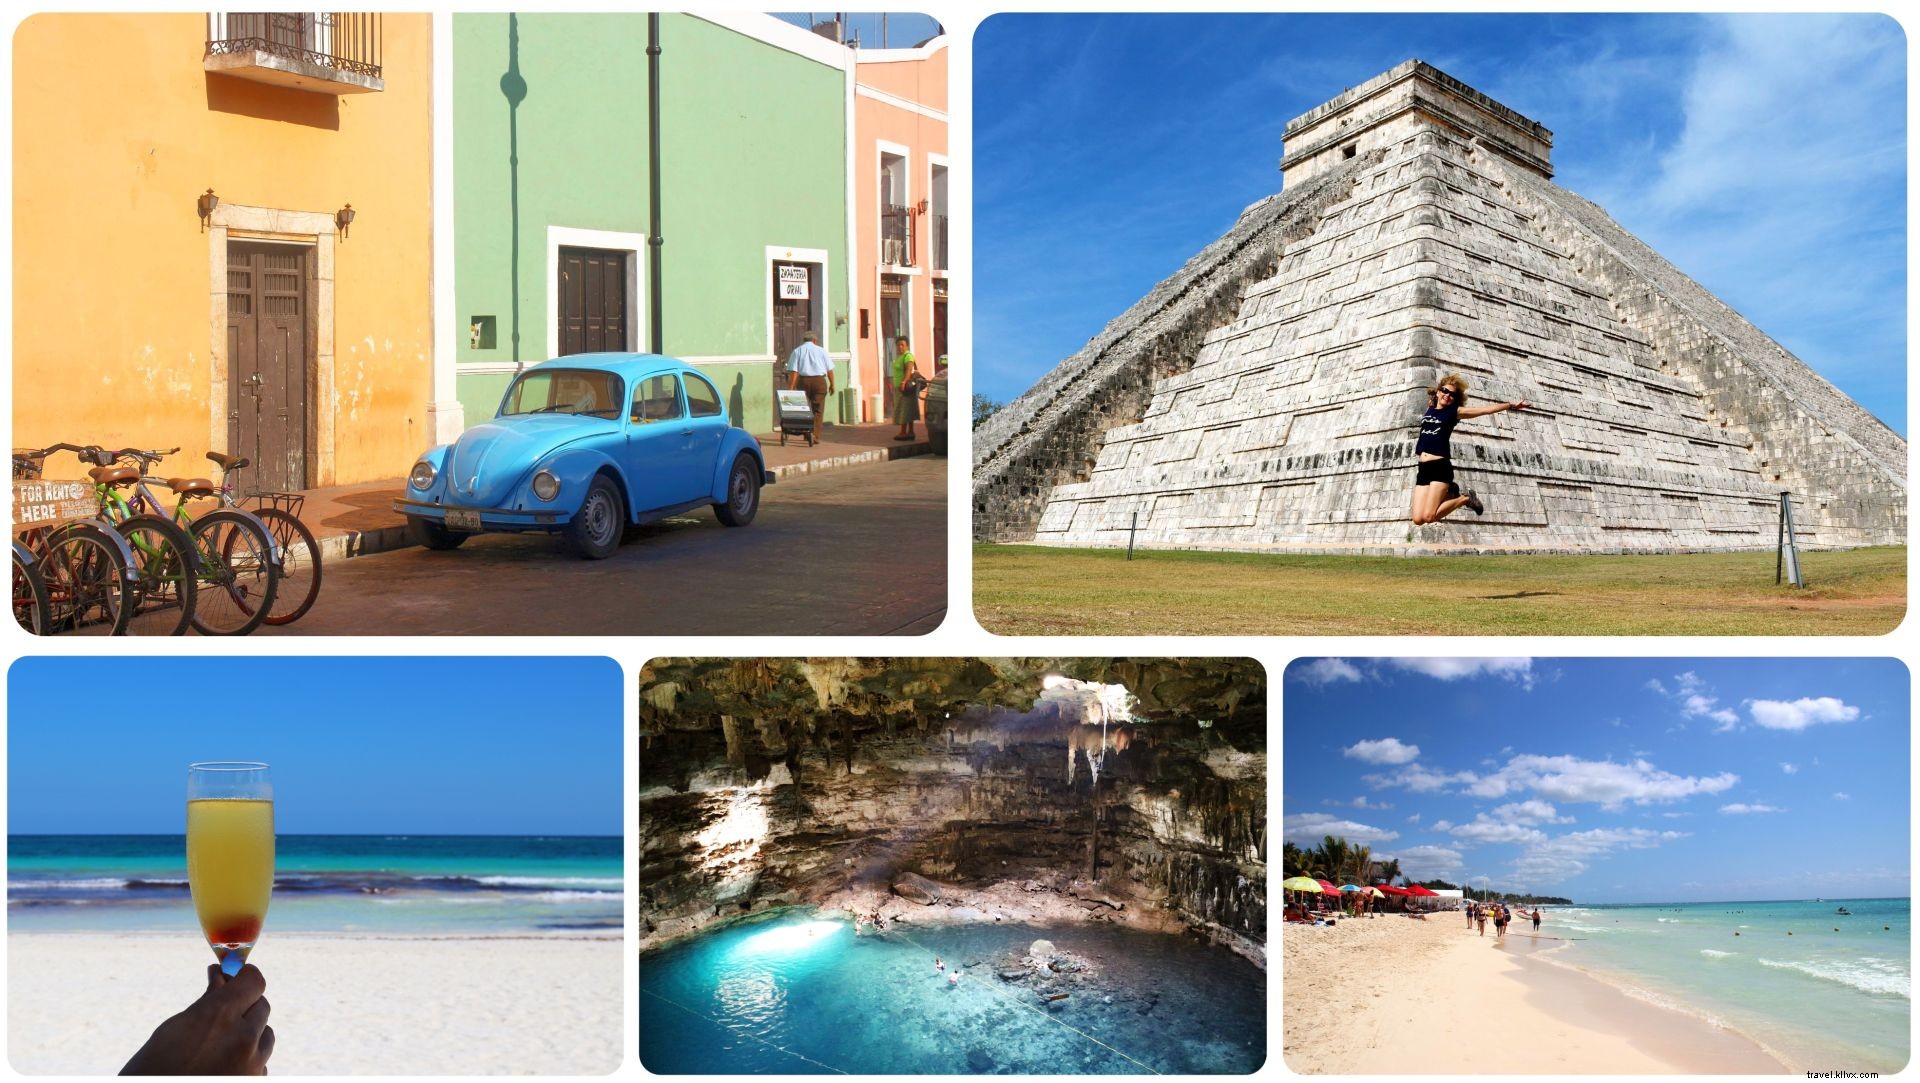 Planifier des vacances parfaites sur la péninsule du Yucatan